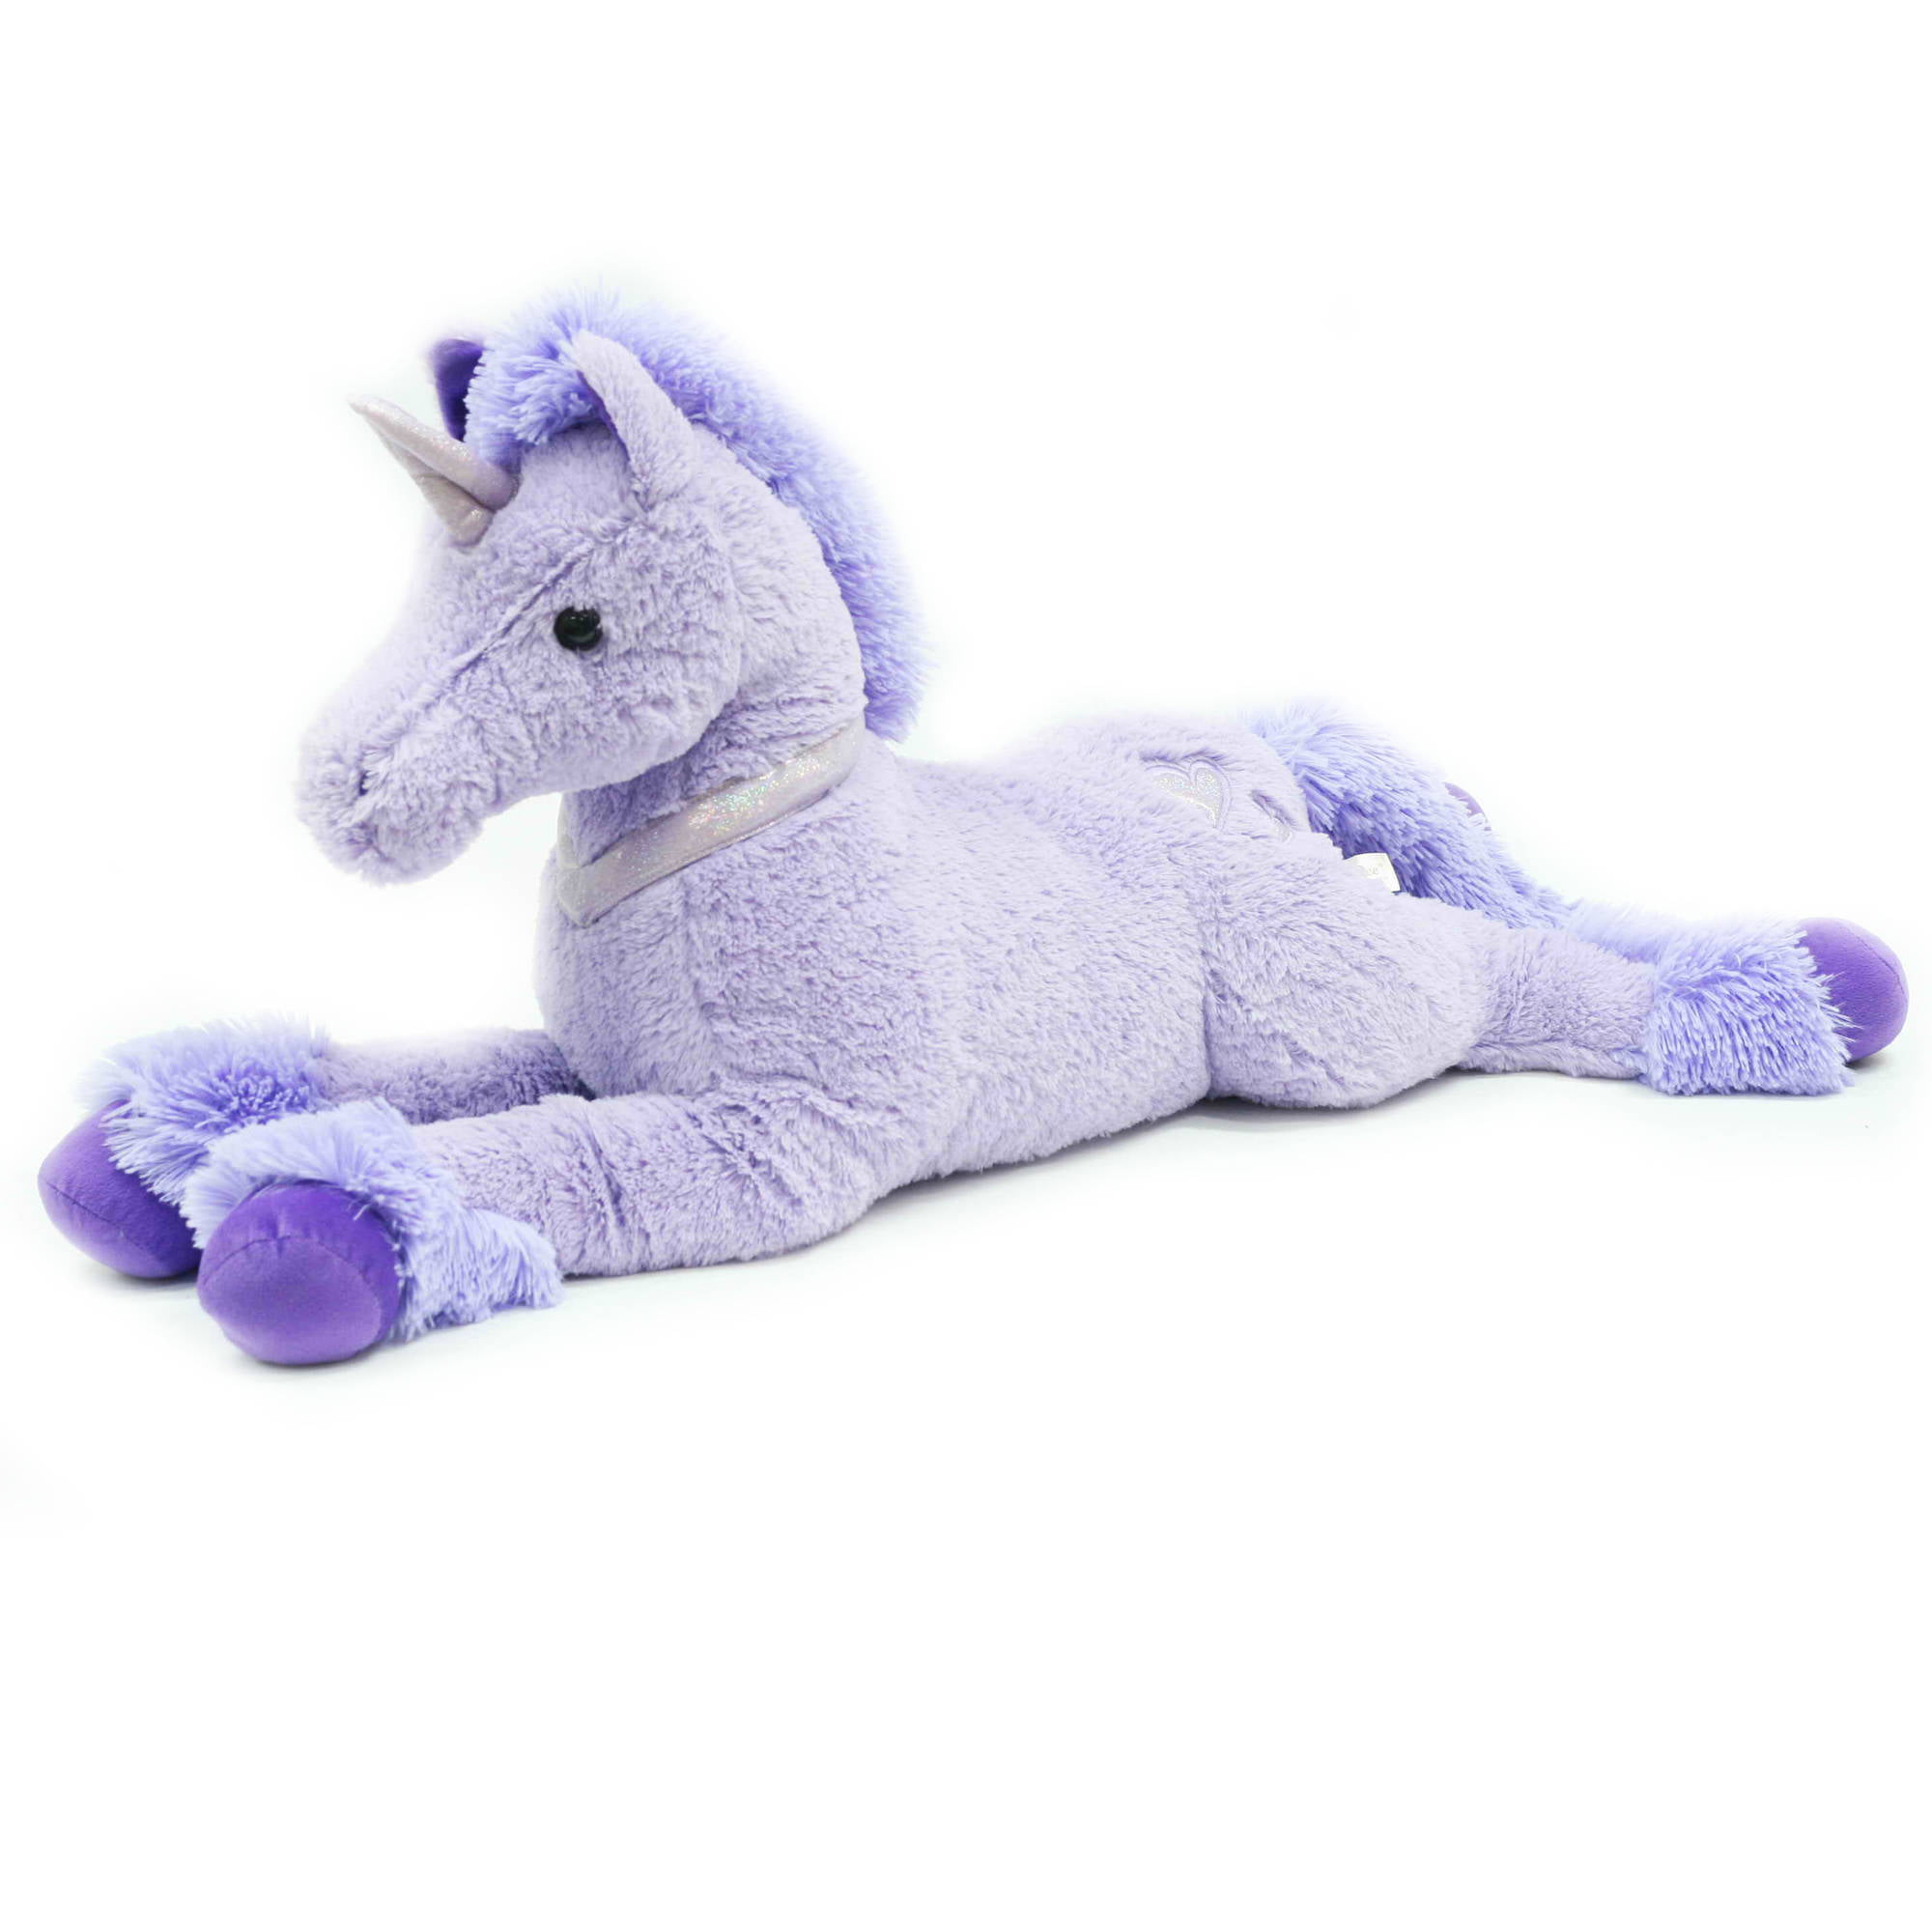 giant stuffed unicorn walmart